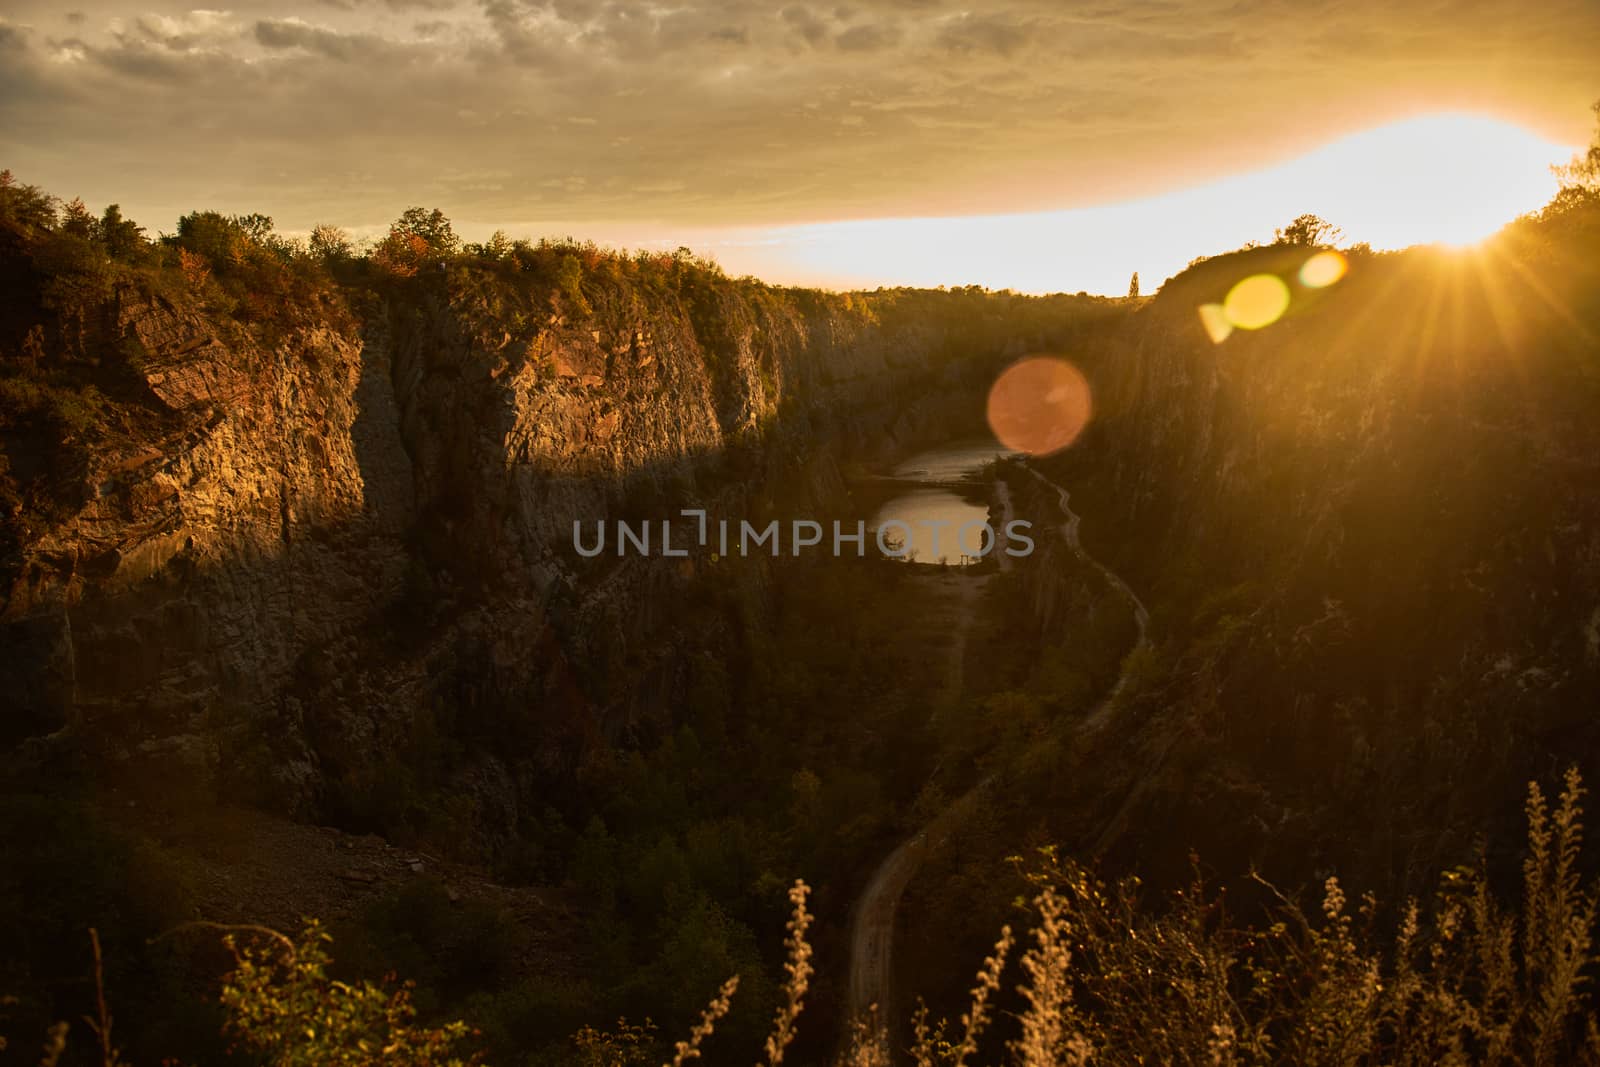 Velka Amerika quarry near Prague at sunset